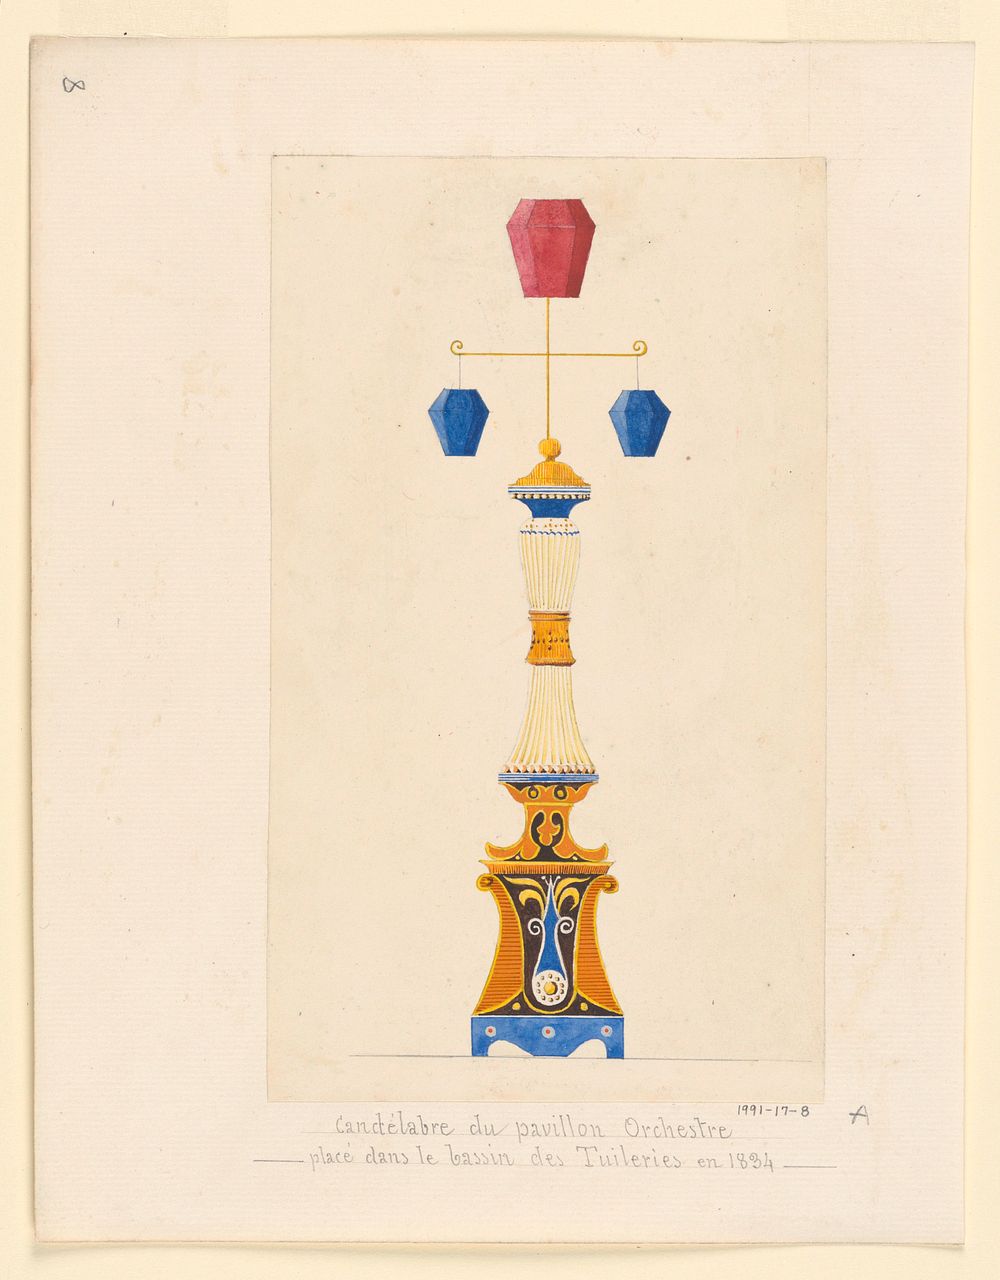 "Candelabre du Pavillon Orchestre place dans le bassin des Tuileries en 1834"